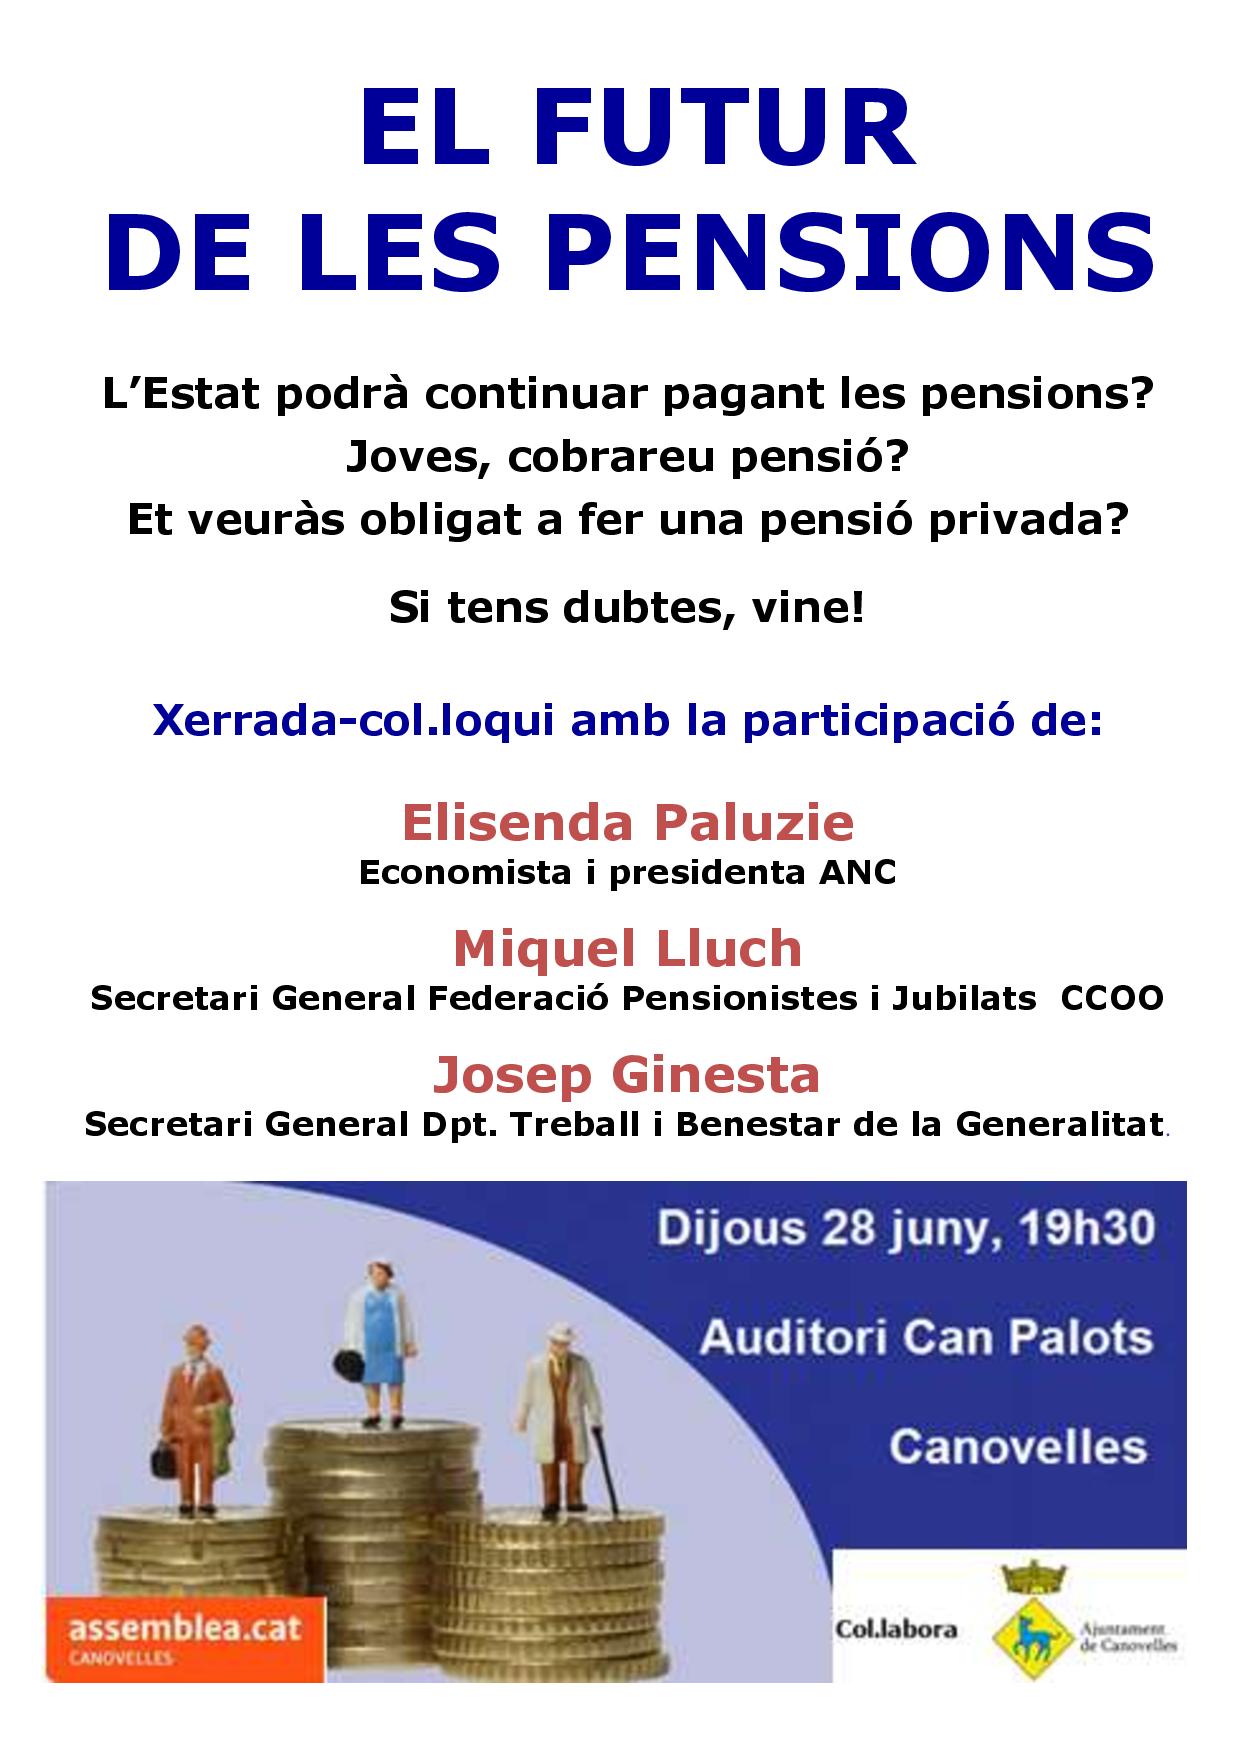 Canovelles - El futur de les pensions